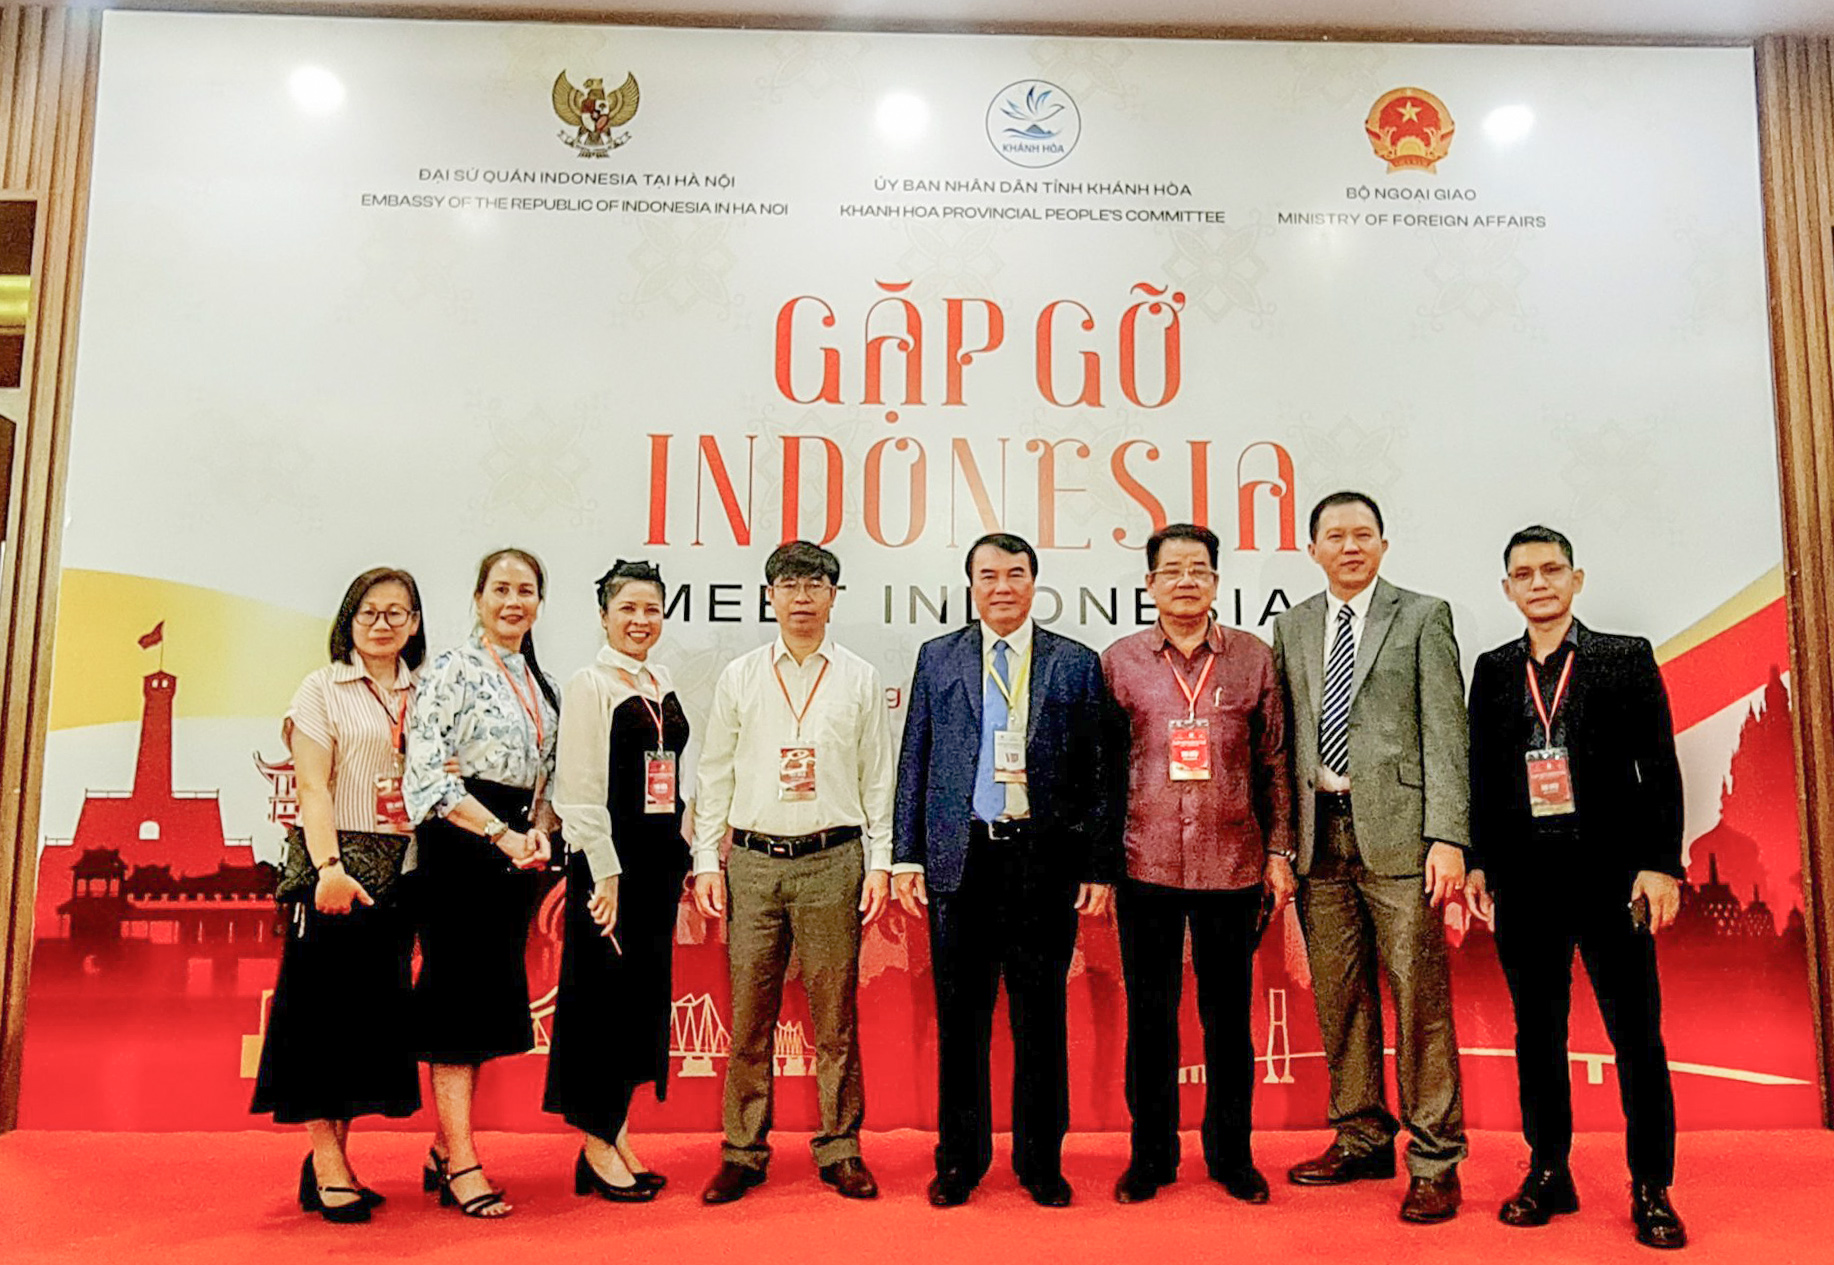 Đoàn công tác của tỉnh Lâm Đồng tham dự Hội nghị “Gặp gỡ Indonesia”